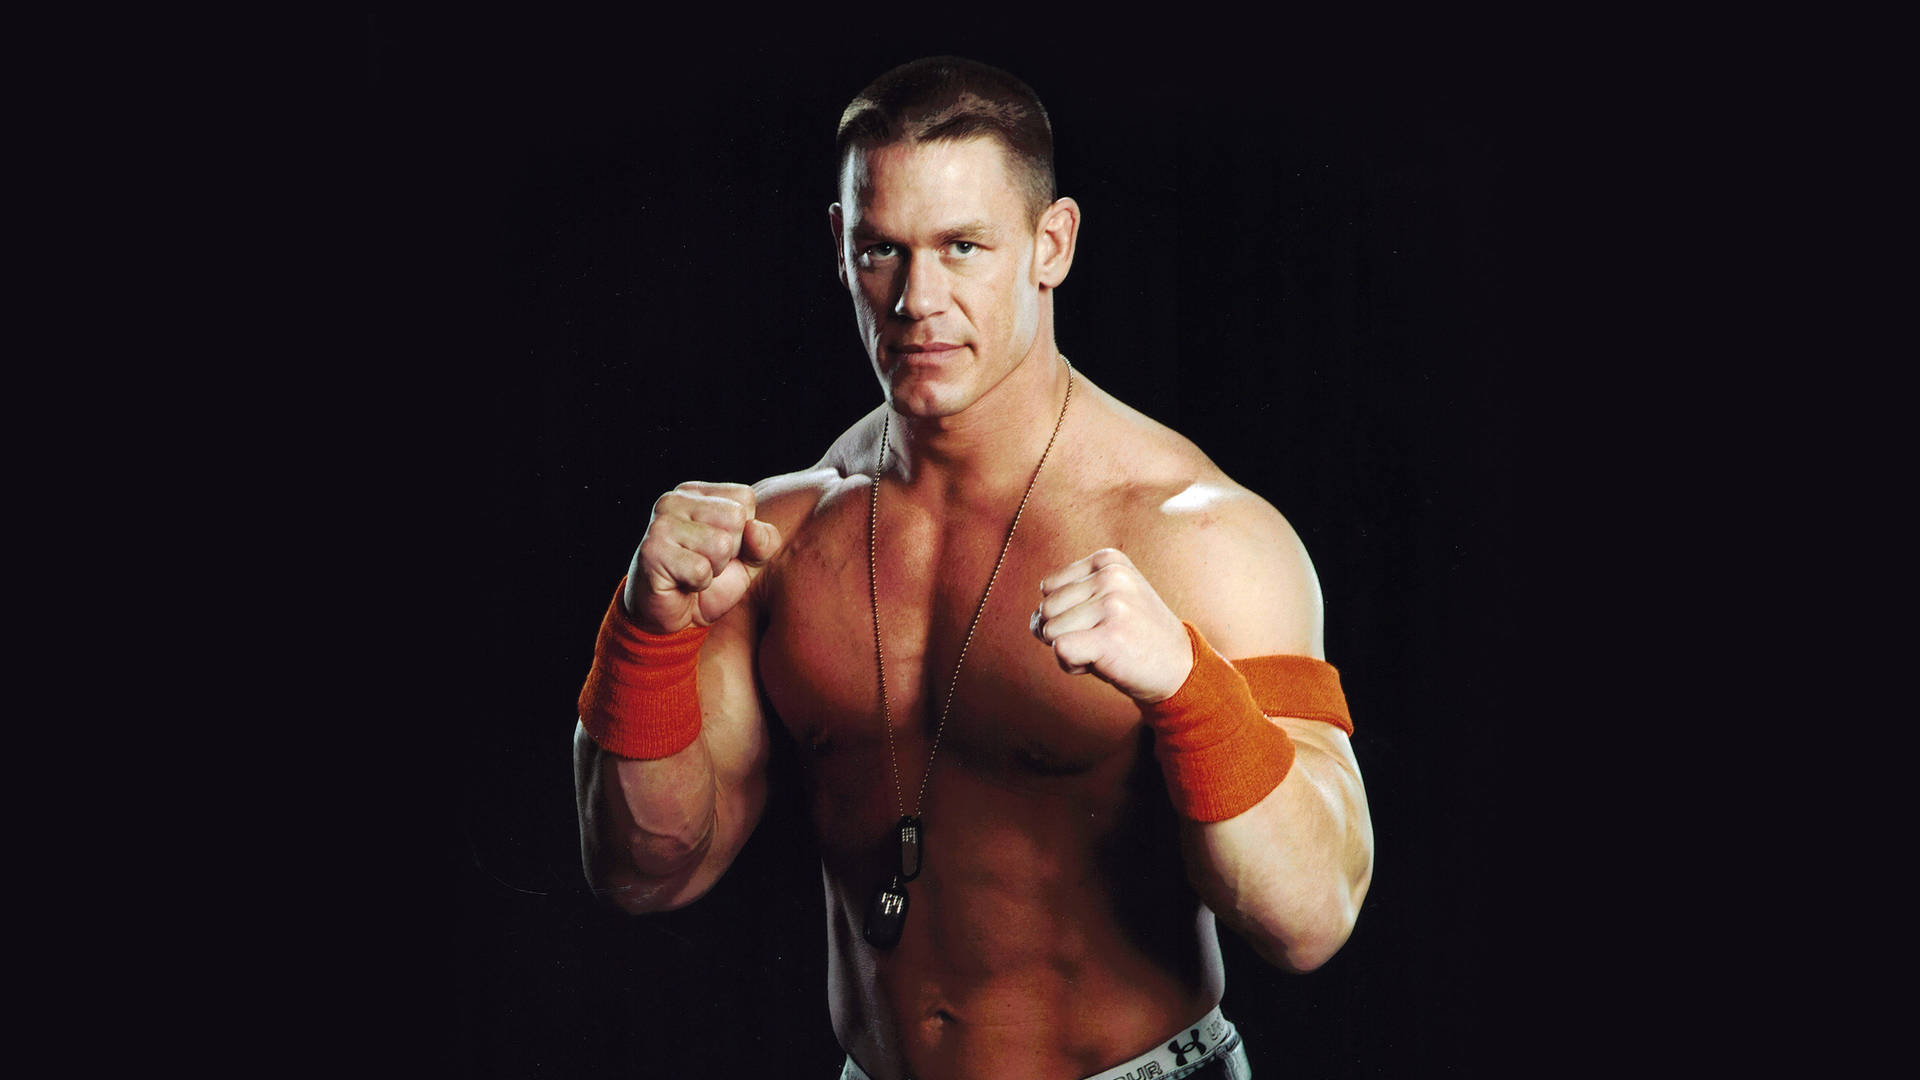 Professional Wrestler John Cena In Black